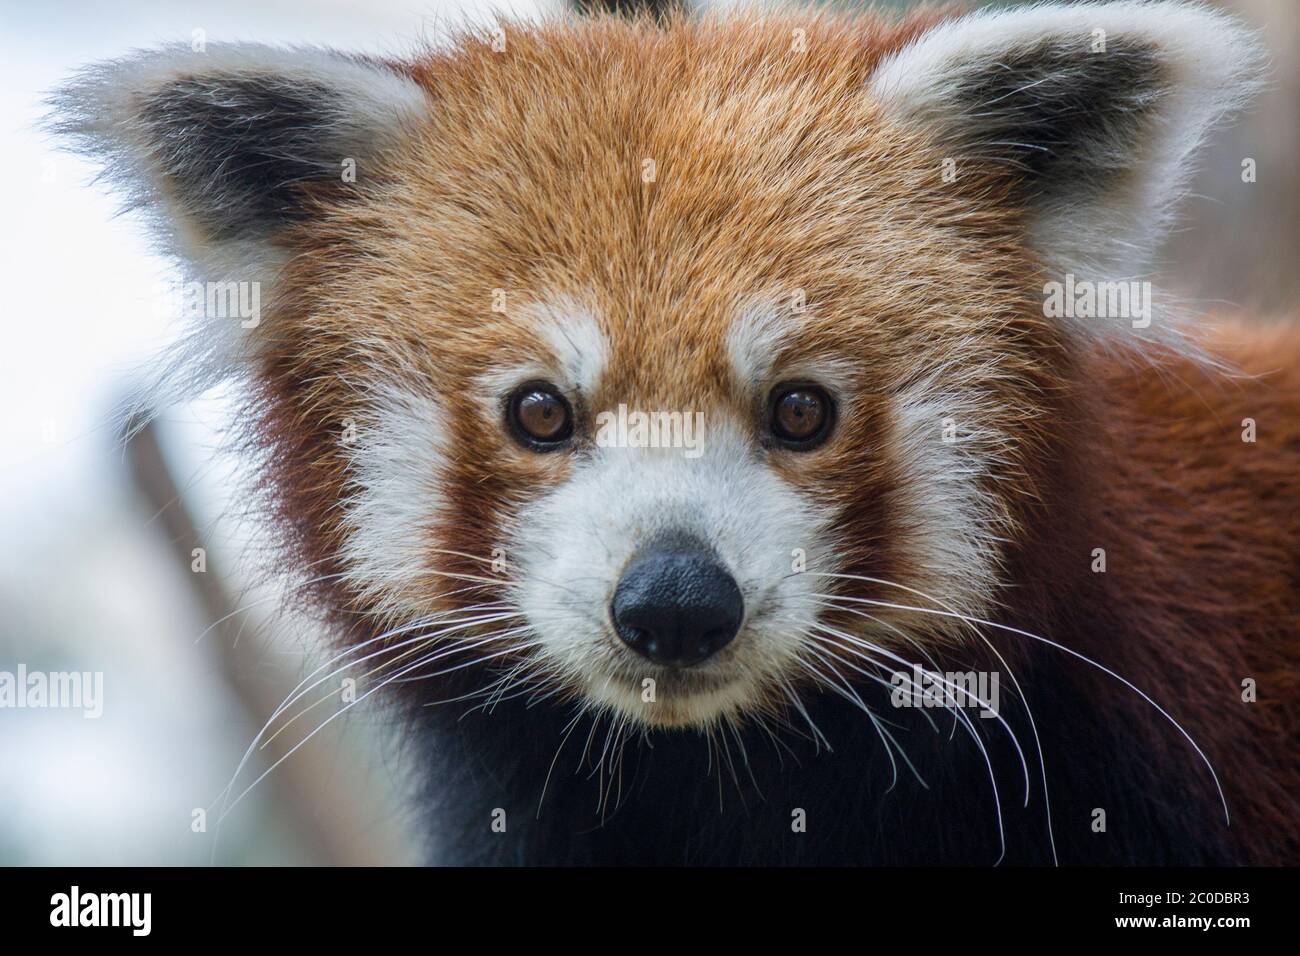 Une image de gros plan du panda rouge (Ailurus fulgens) c'est un mammifère originaire de l'est de l'Himalaya et du sud-ouest de la Chine le panda rouge a la fourrure brun rougeâtre. Banque D'Images